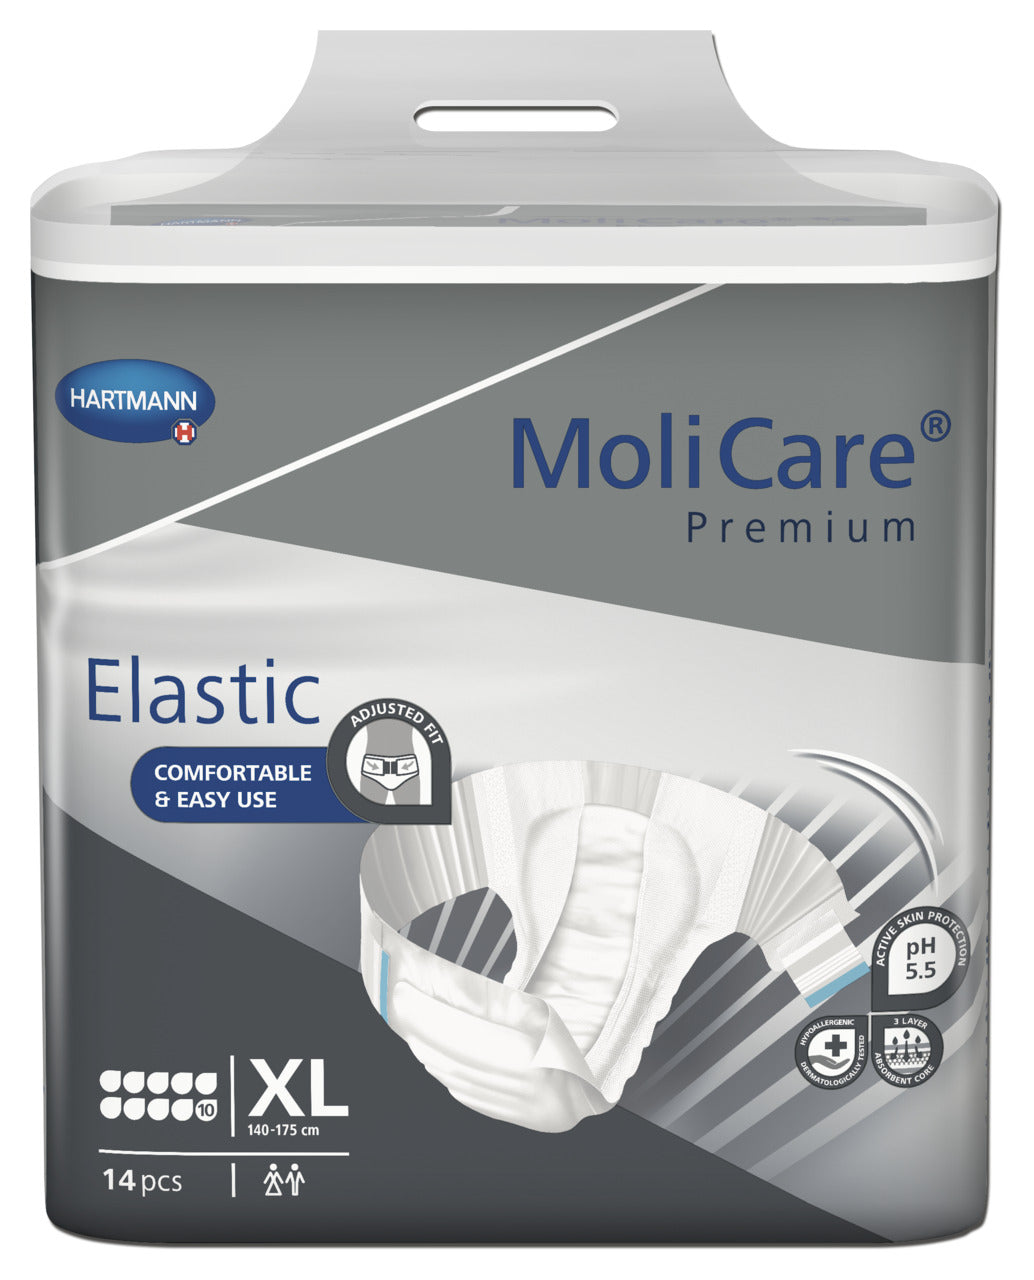 MoliCare Premium Elastic 10 Drop